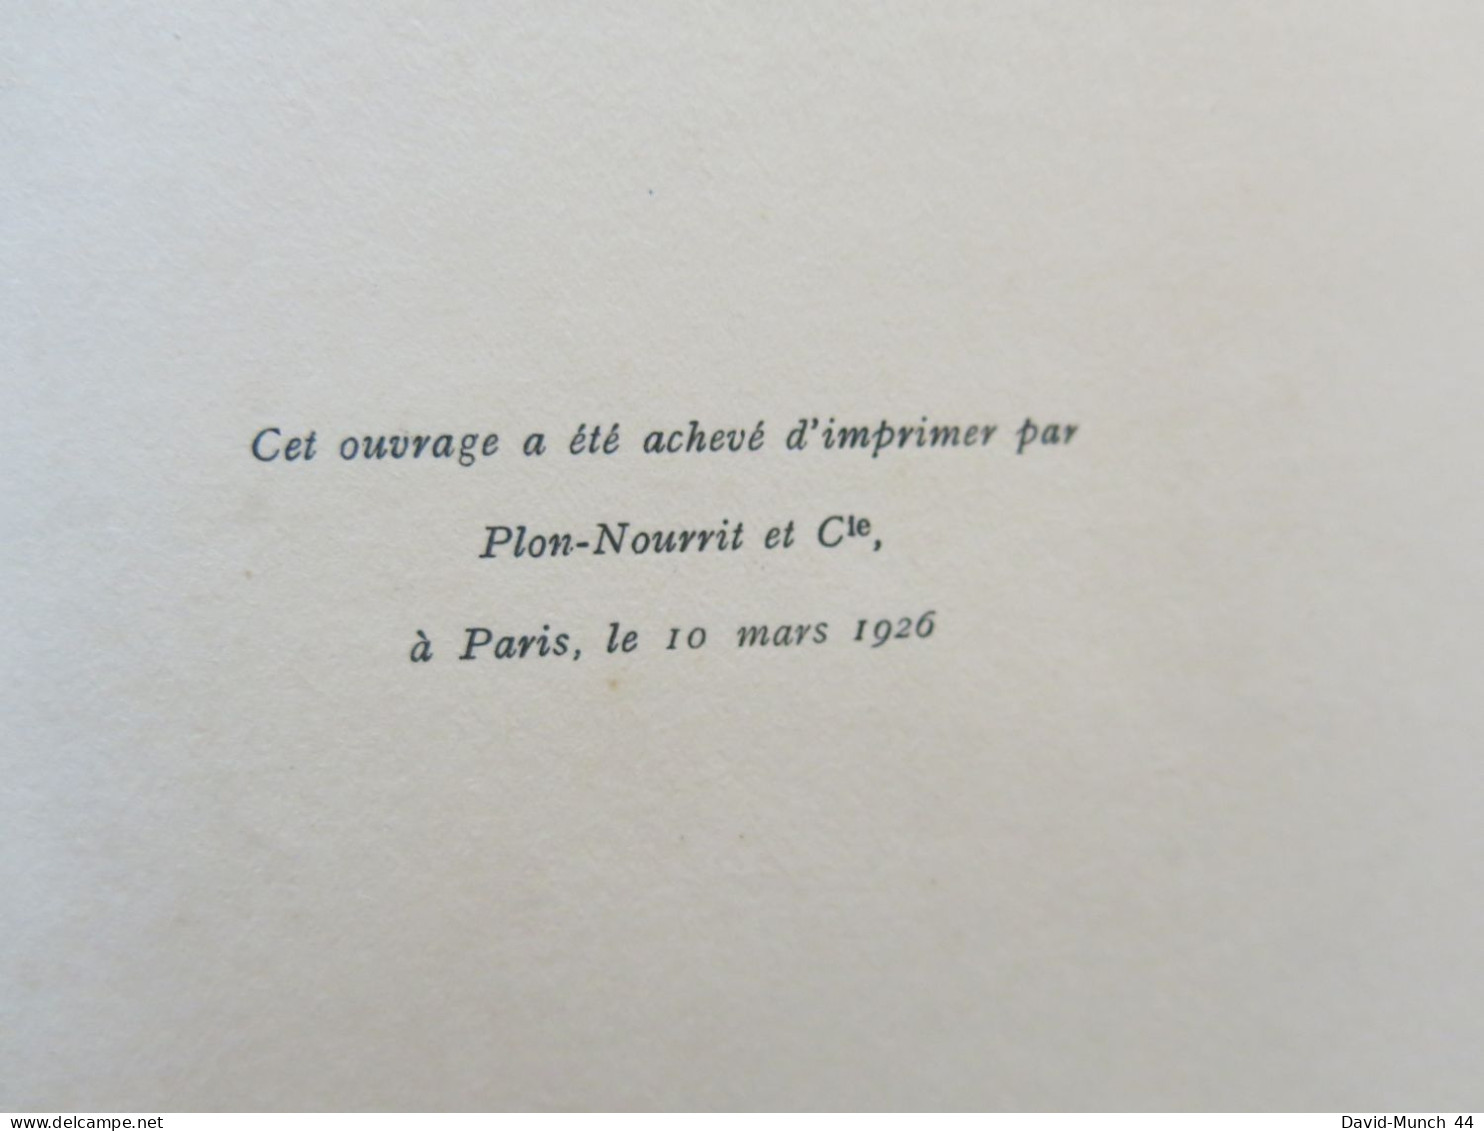 De la présidence à la prison de Ferdinand Ossendowski. Paris, Plon-Nourrit et Cie Imprimeur-éditeurs. 1926